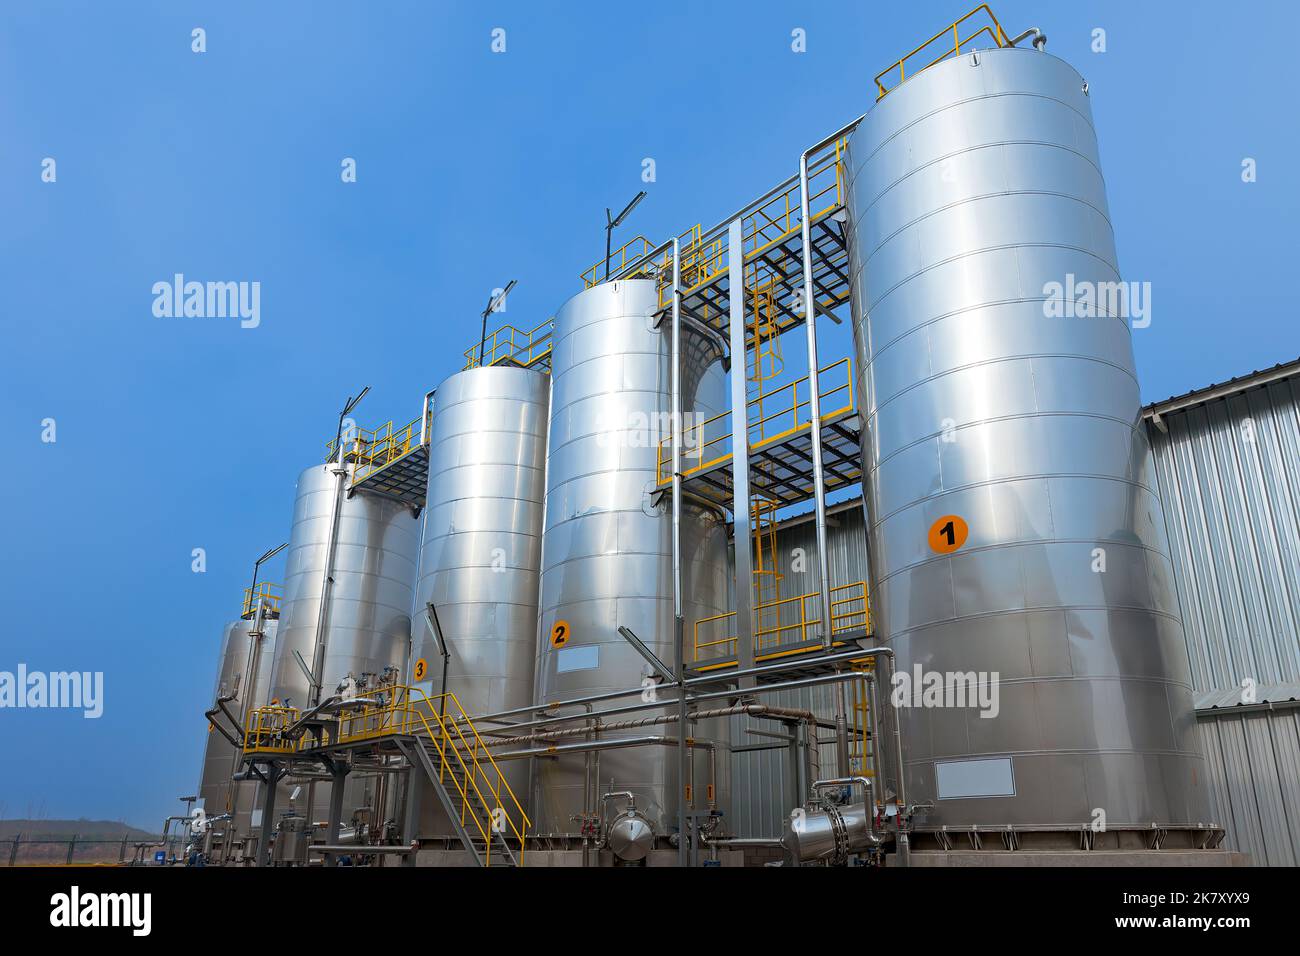 Vista de silos con productos químicos para la industria alimentaria Foto de stock